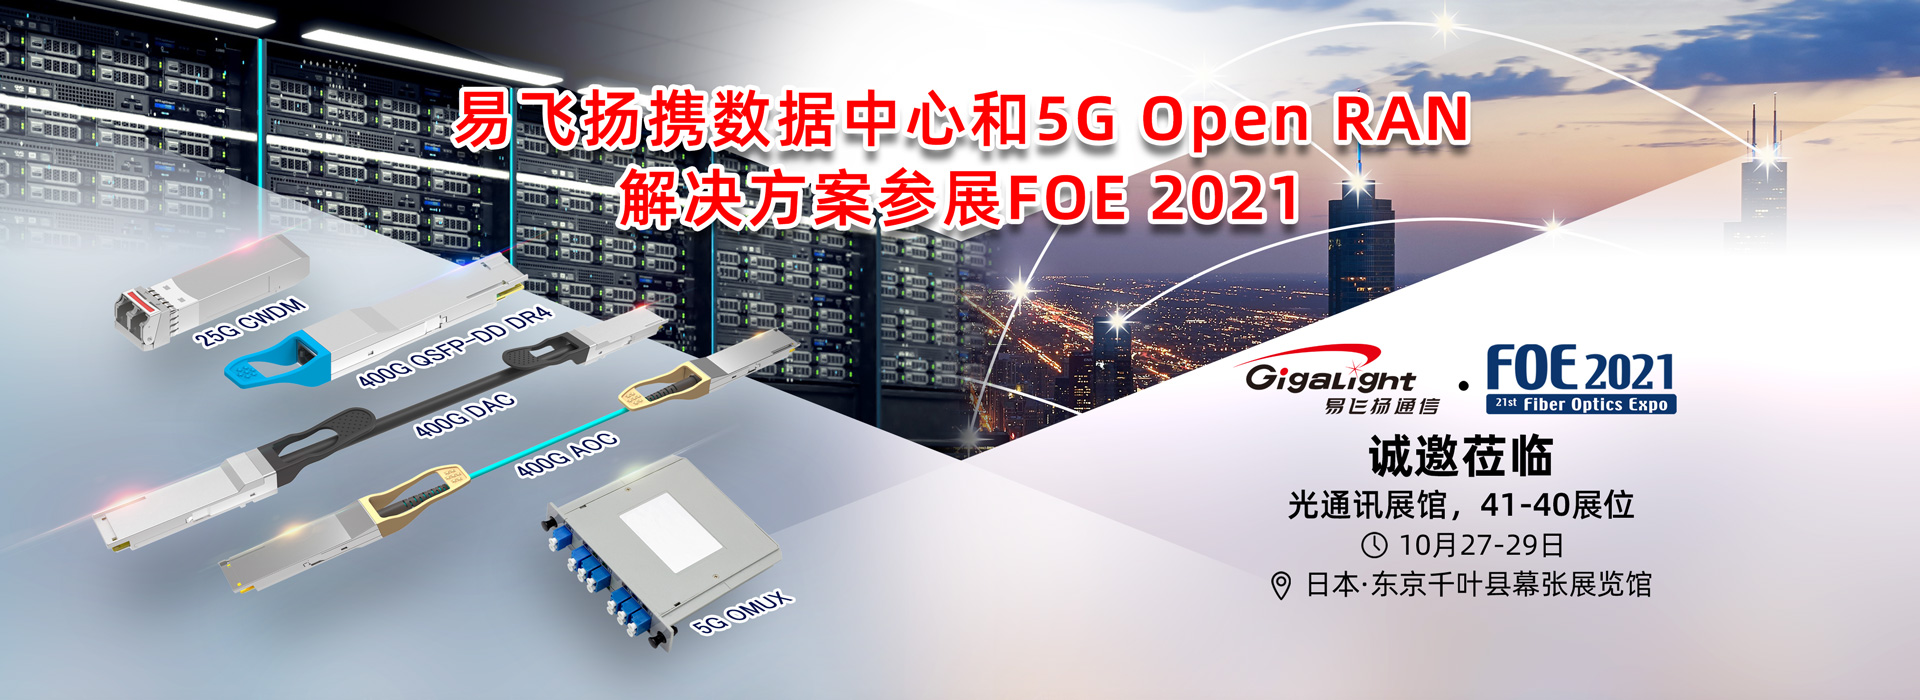 易飞扬携数据中心和5G Open RAN解决方案亮相日本第21届光通信技术展插图